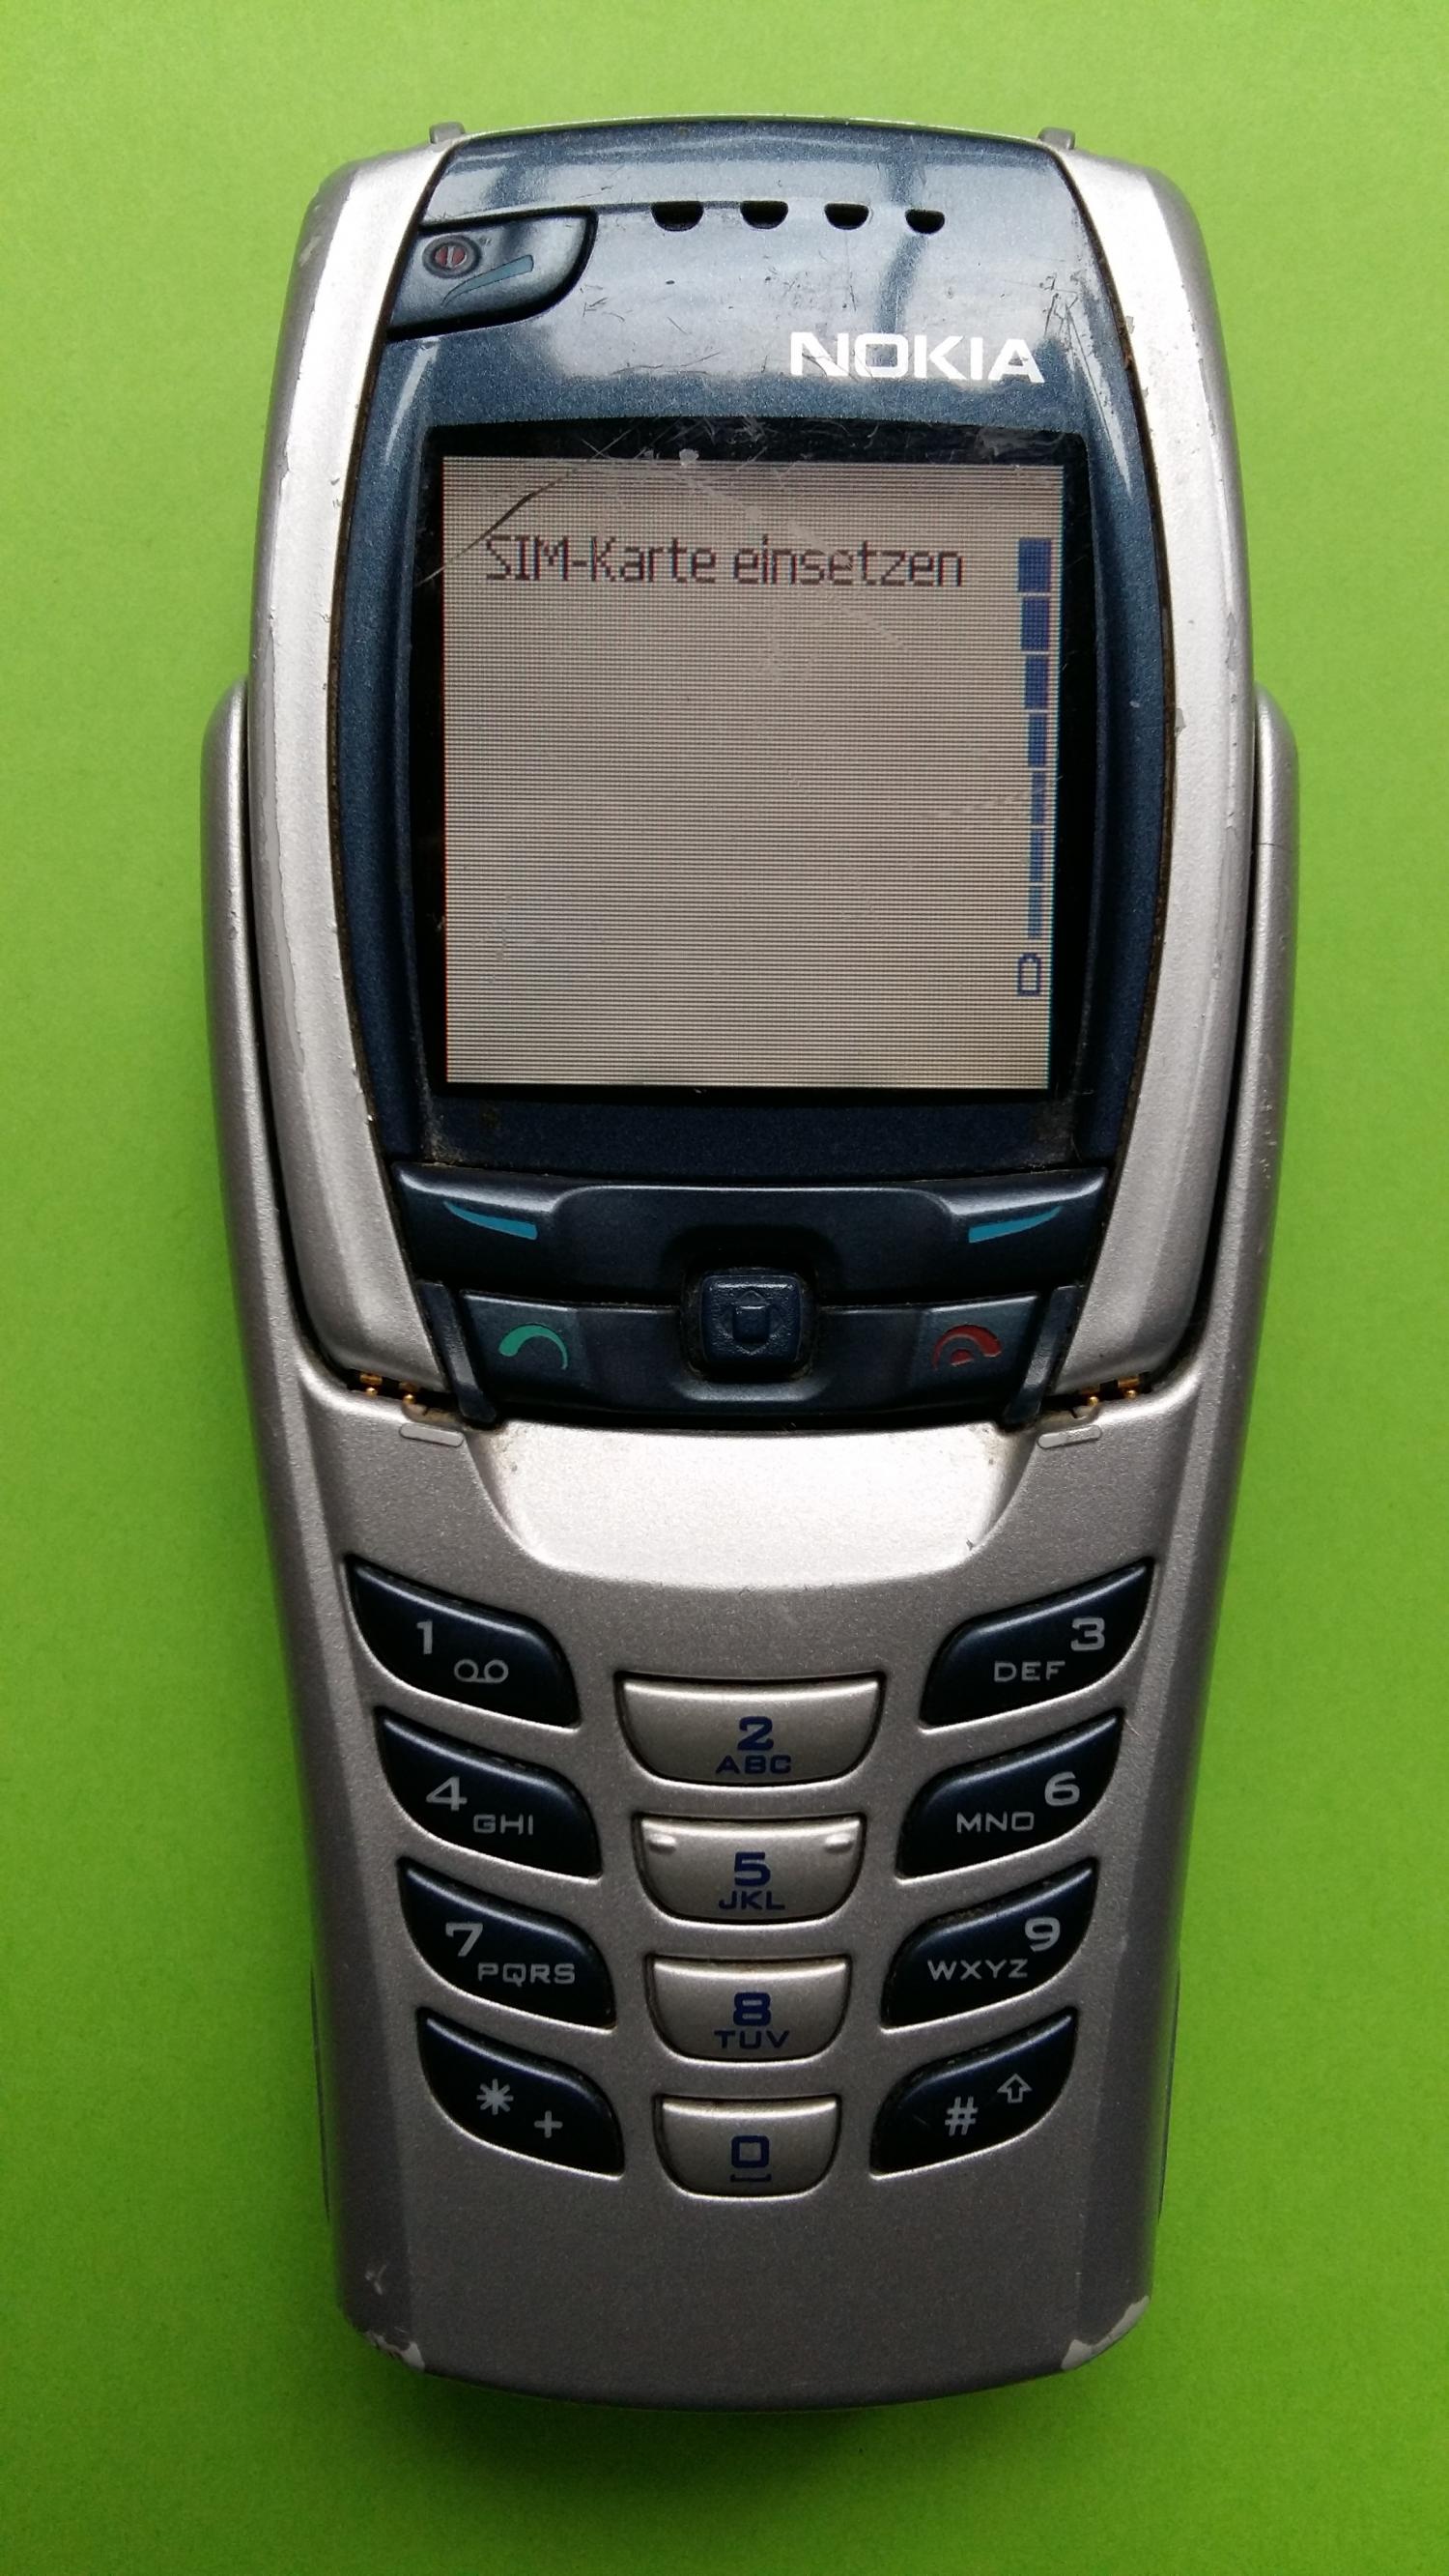 image-7331687-Nokia 6800 (1)1.jpg